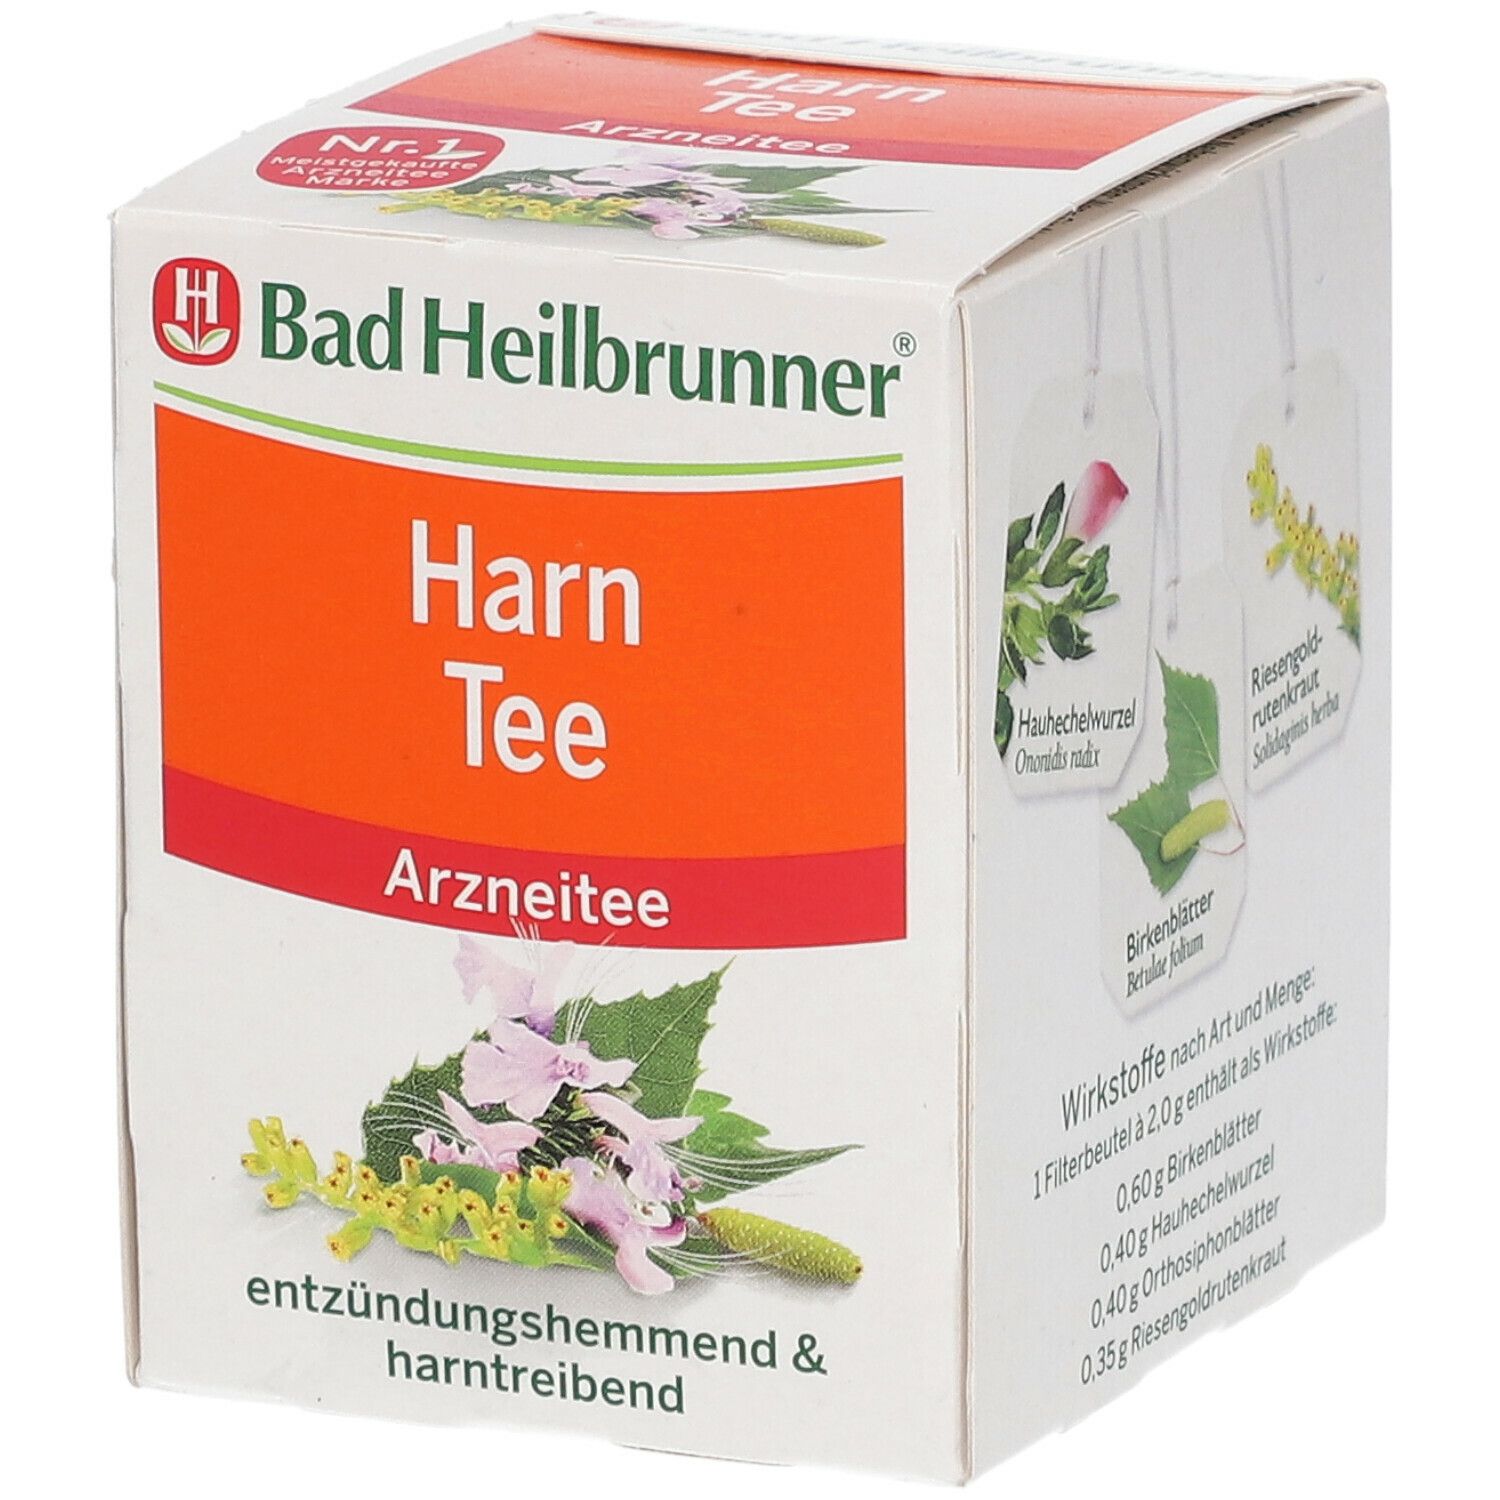 Bad Heilbrunner® Harn Tee